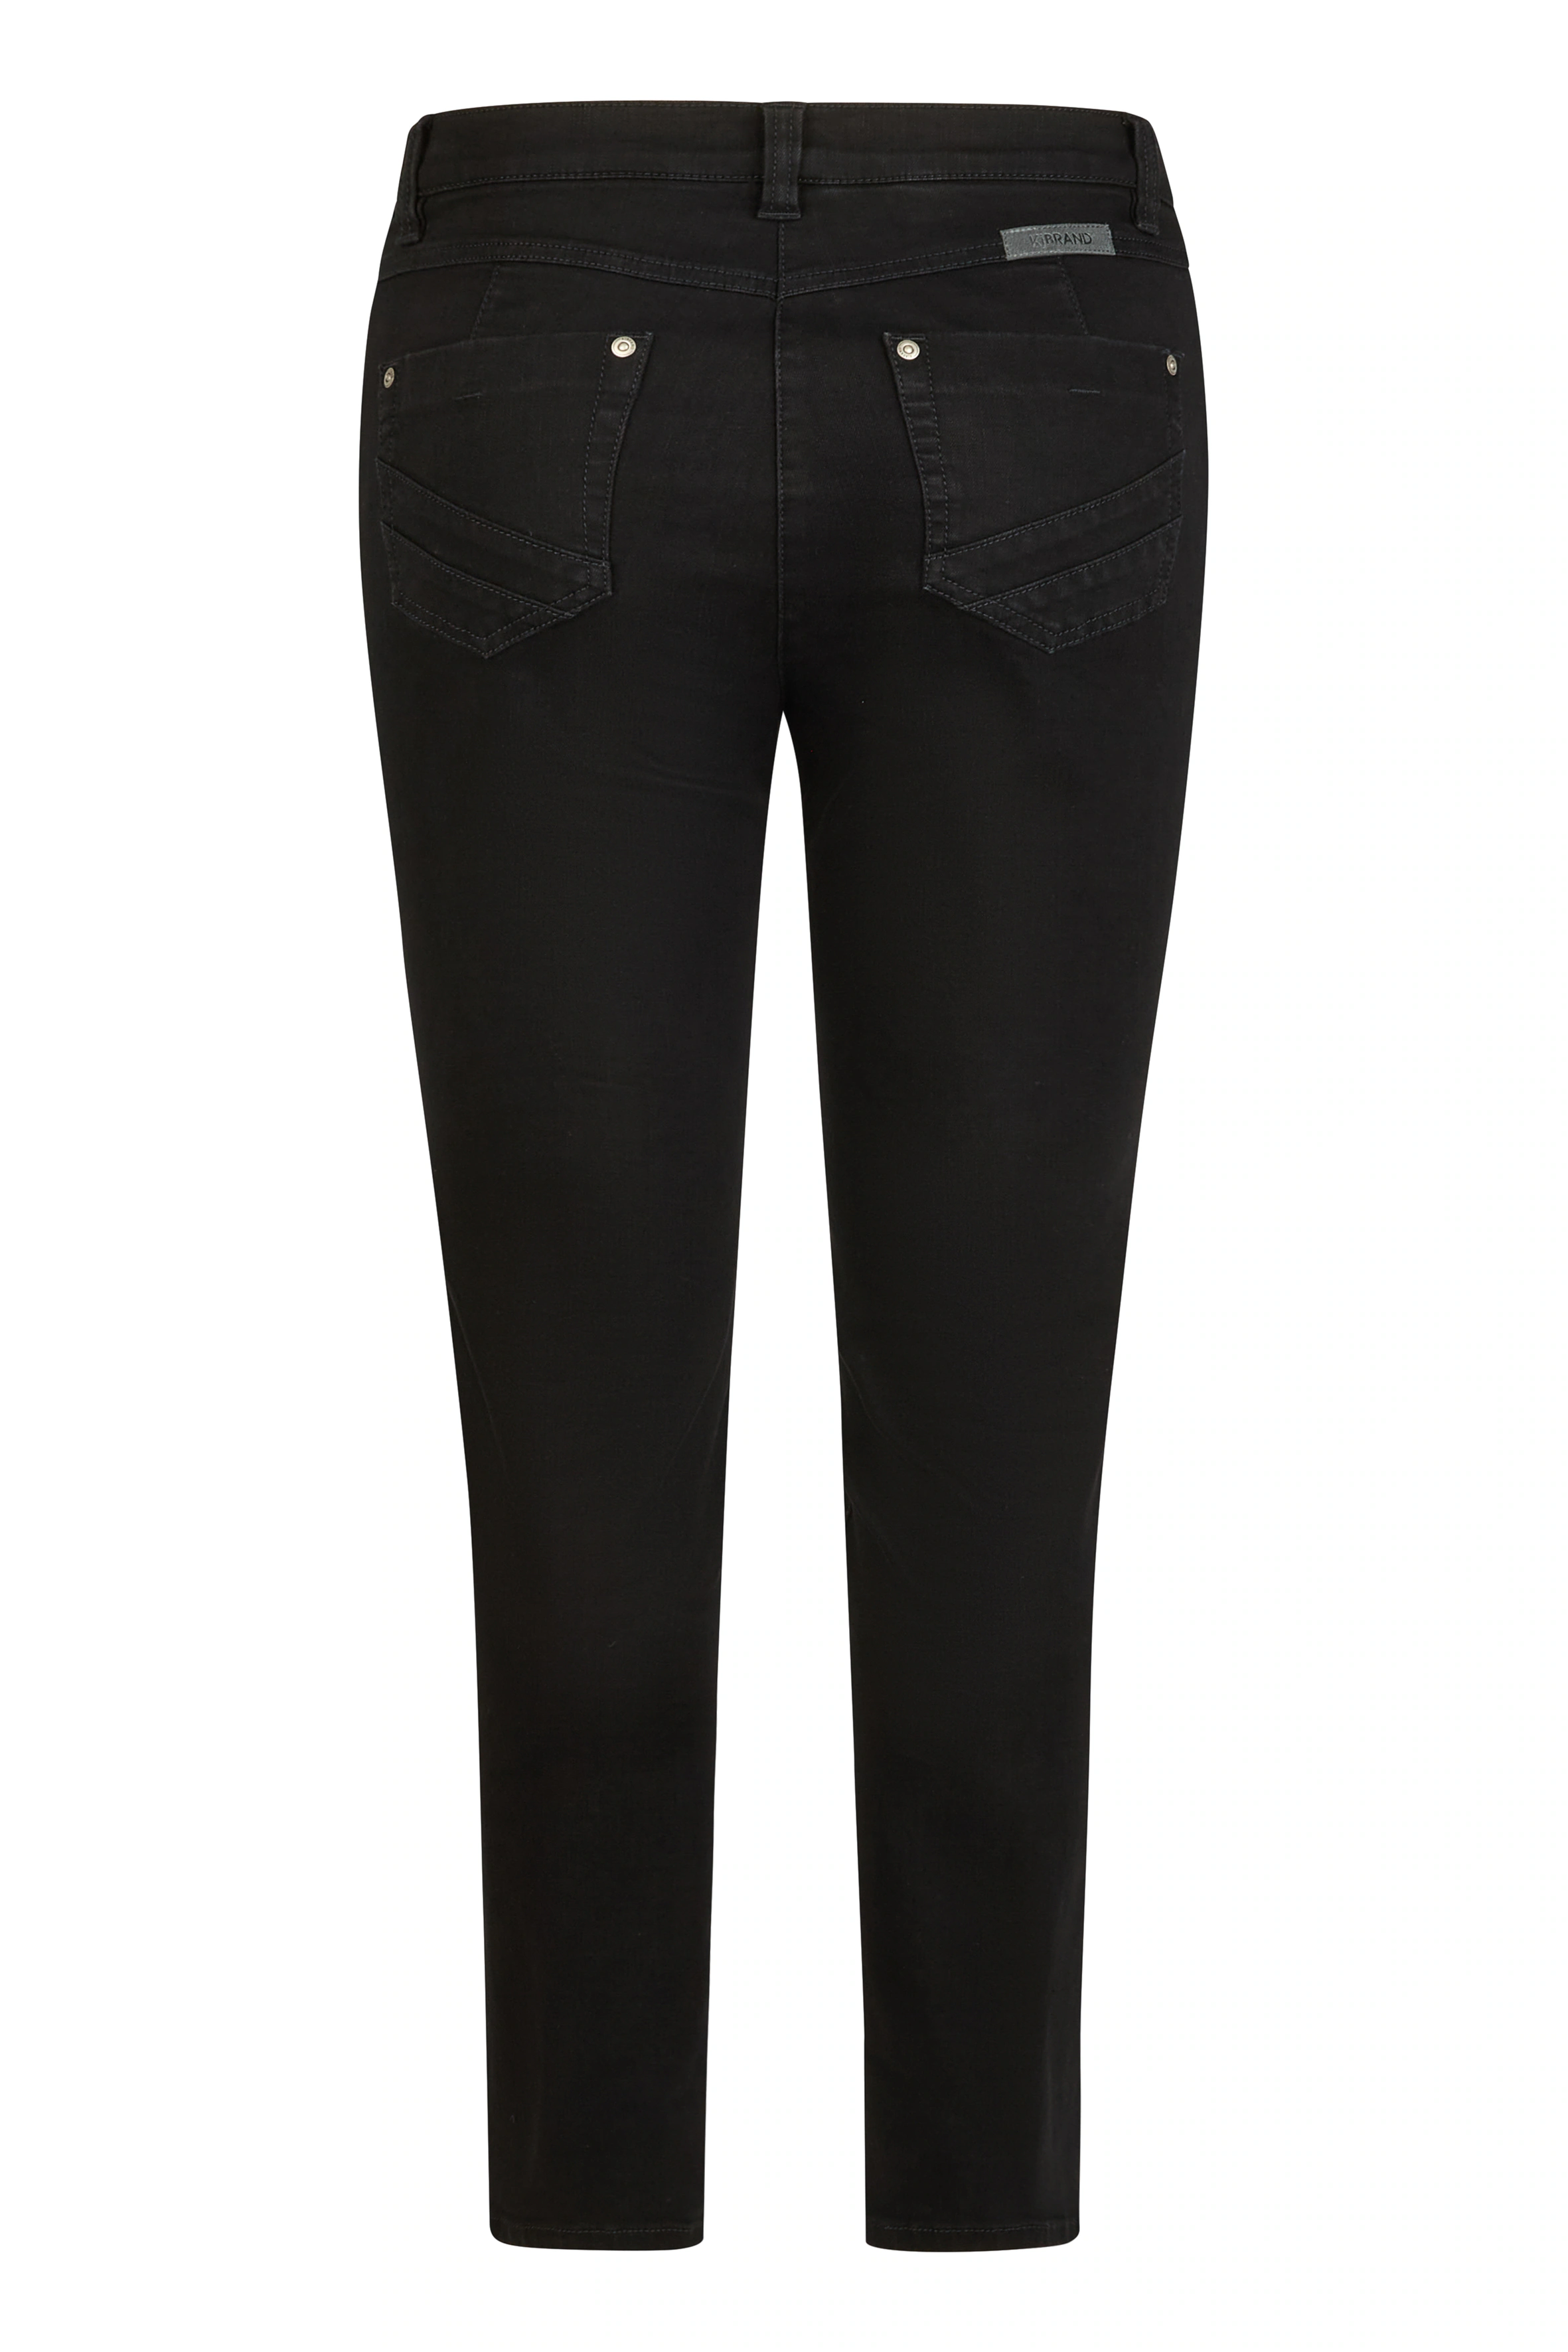 KjBRAND 5-Pocket-Jeans Hose Fanni Skinny, ideal für schlanke Beine günstig online kaufen